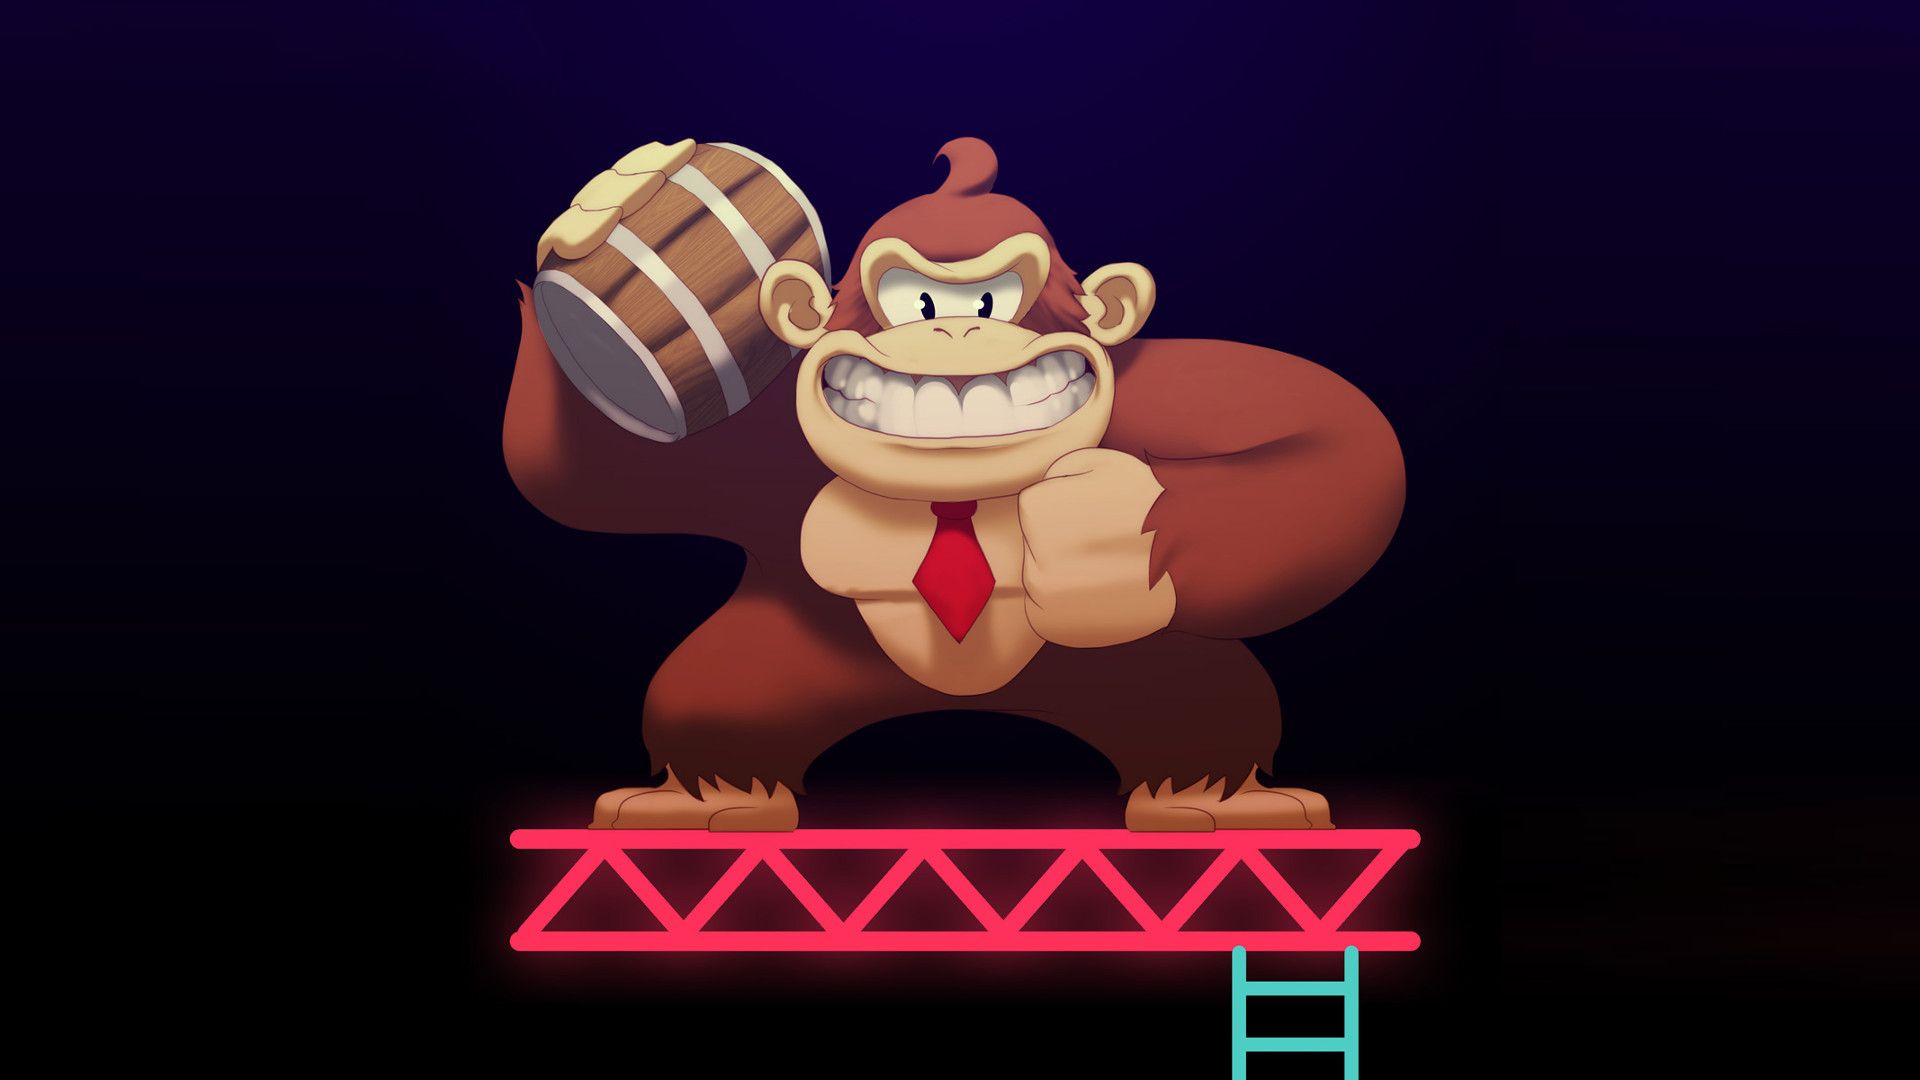 Donkey Kong Wallpaper Free Donkey Kong Background